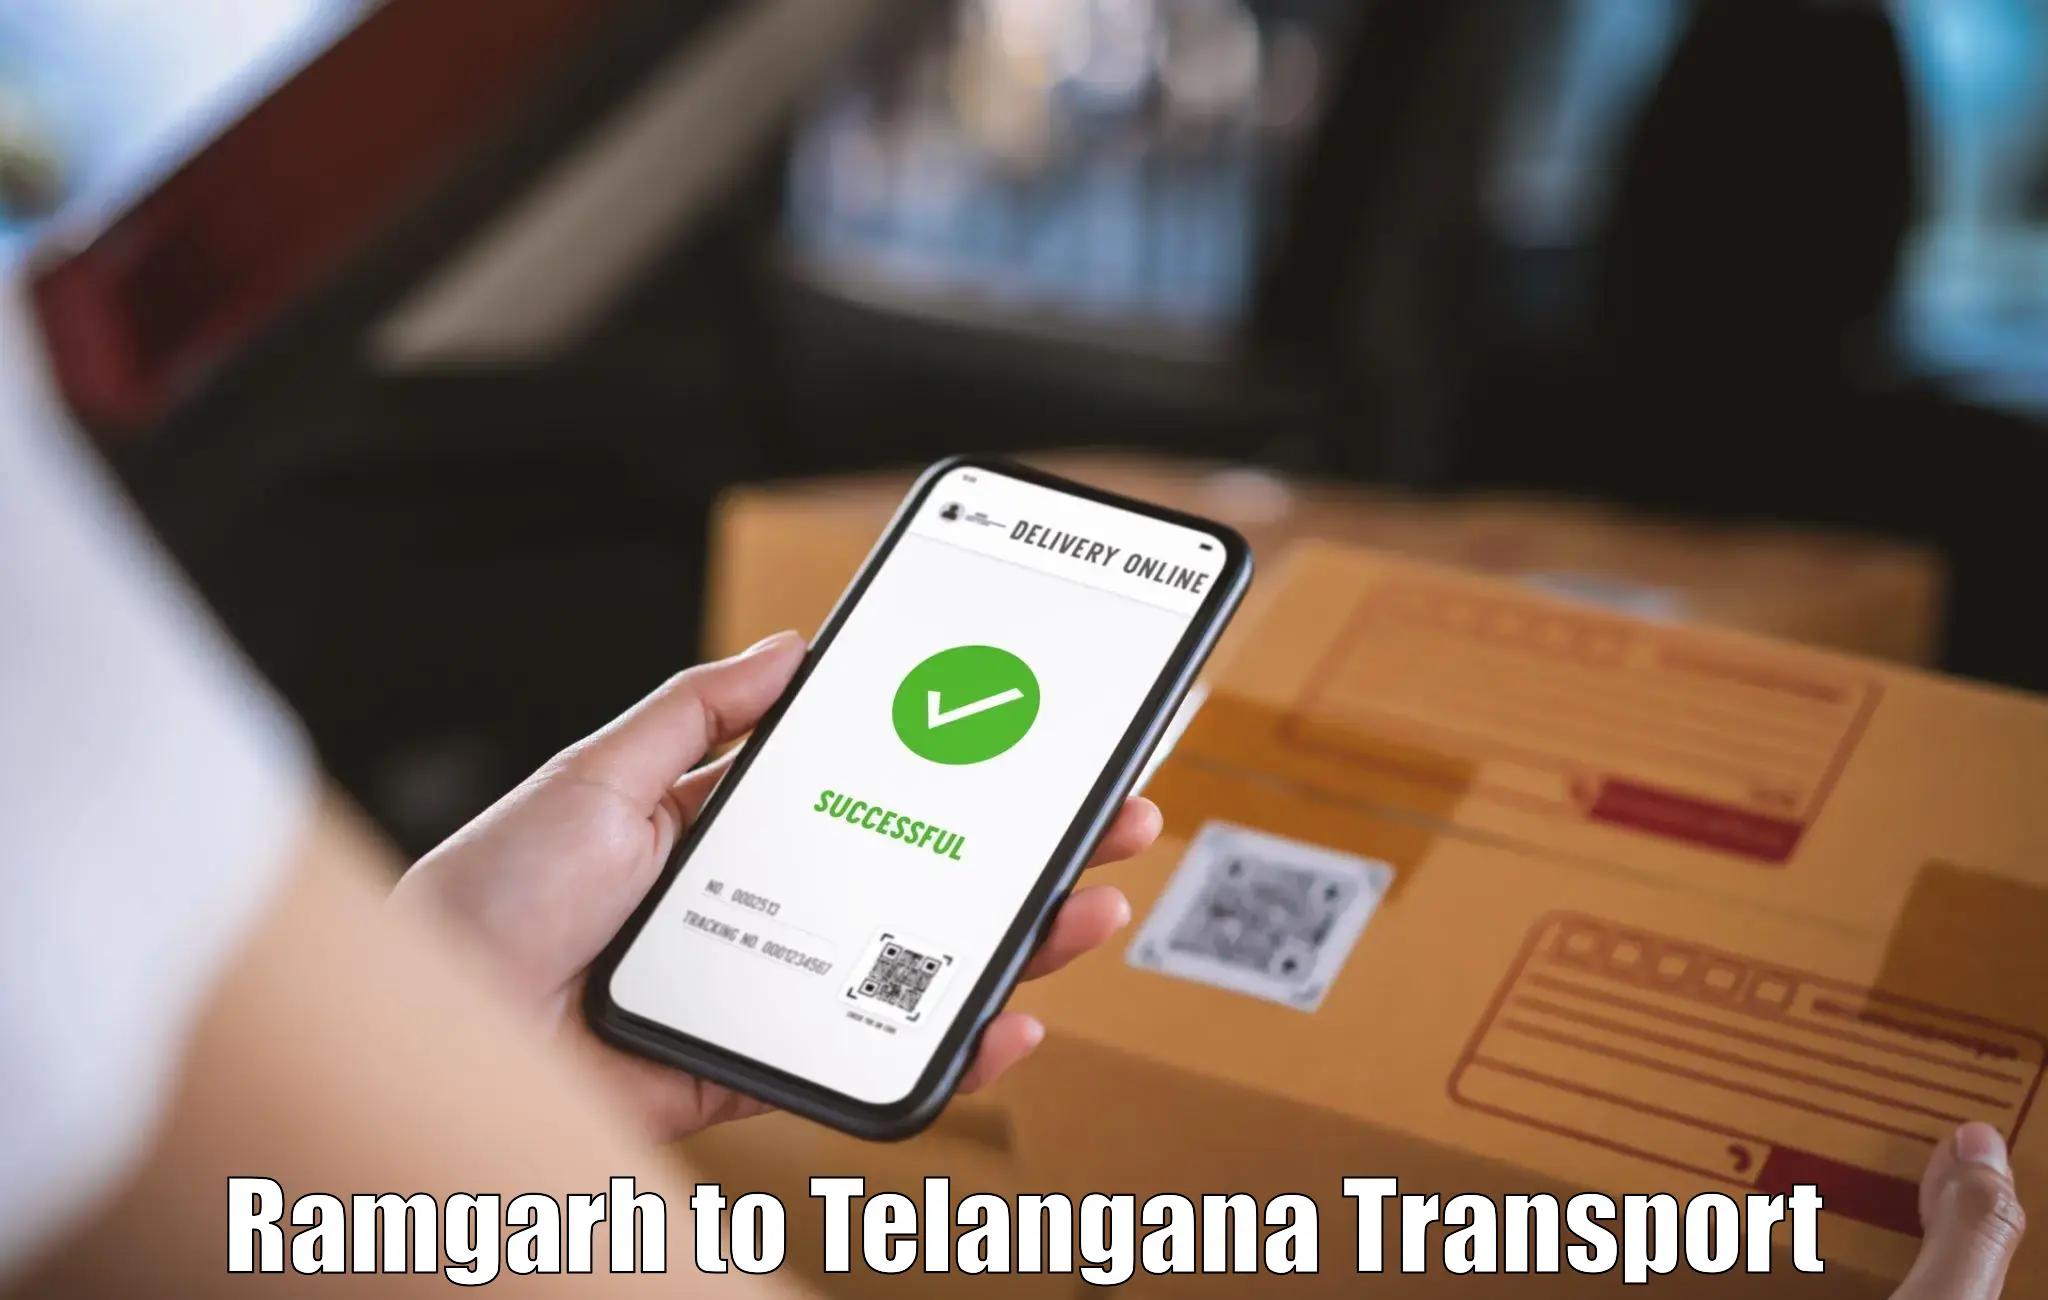 International cargo transportation services Ramgarh to Thungathurthi